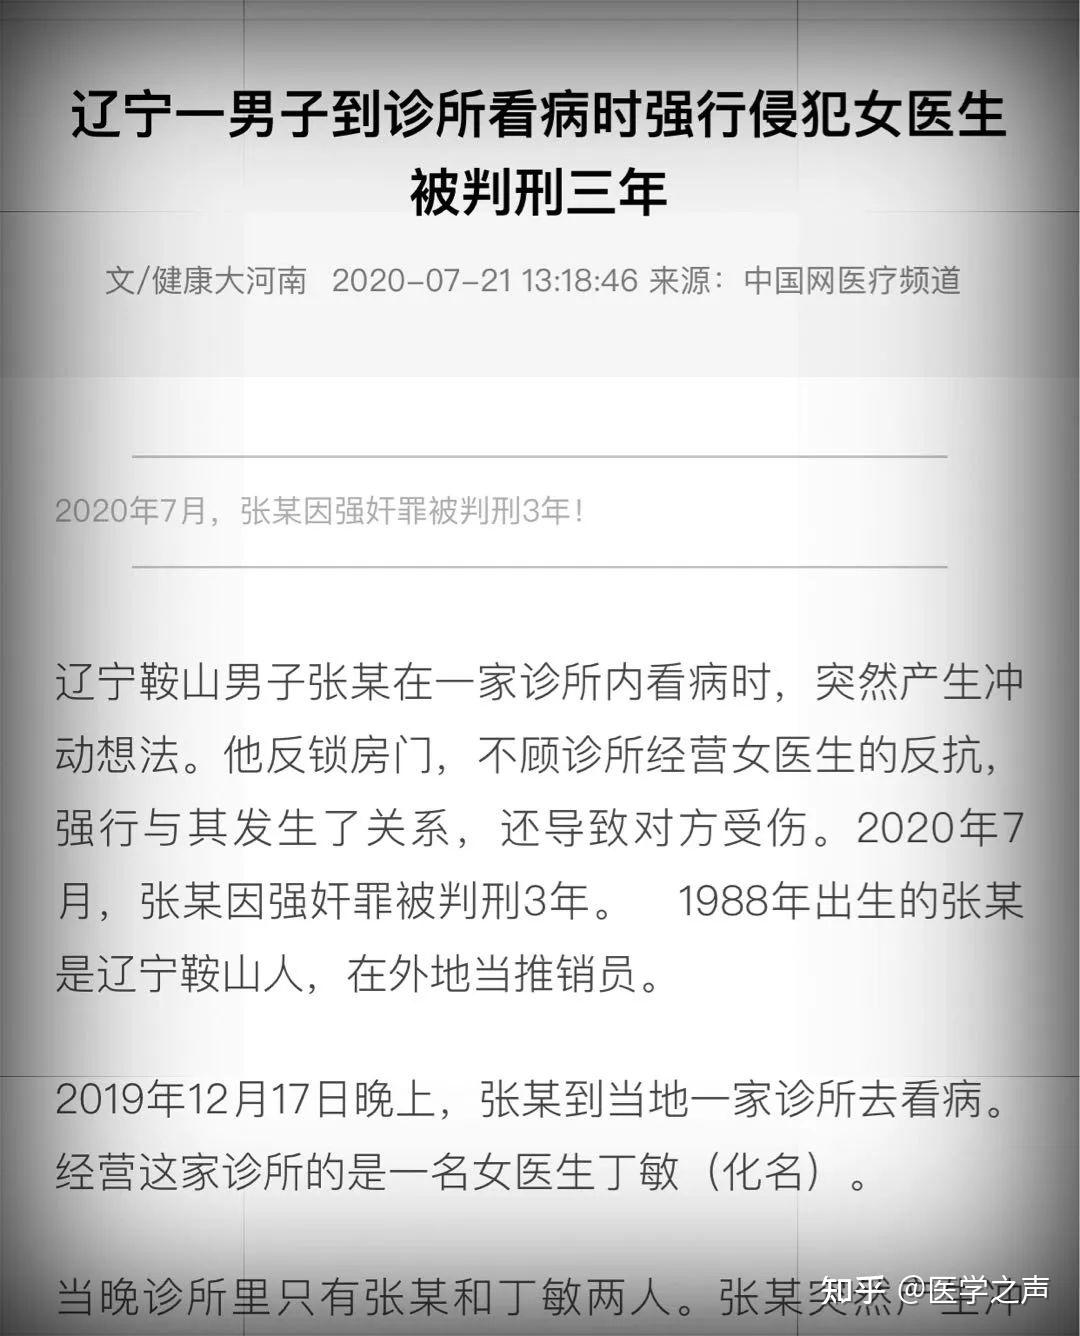 20分钟内强奸女子三次华裔男被判监打鞭 | 新生活报 - ILifePost爱生活